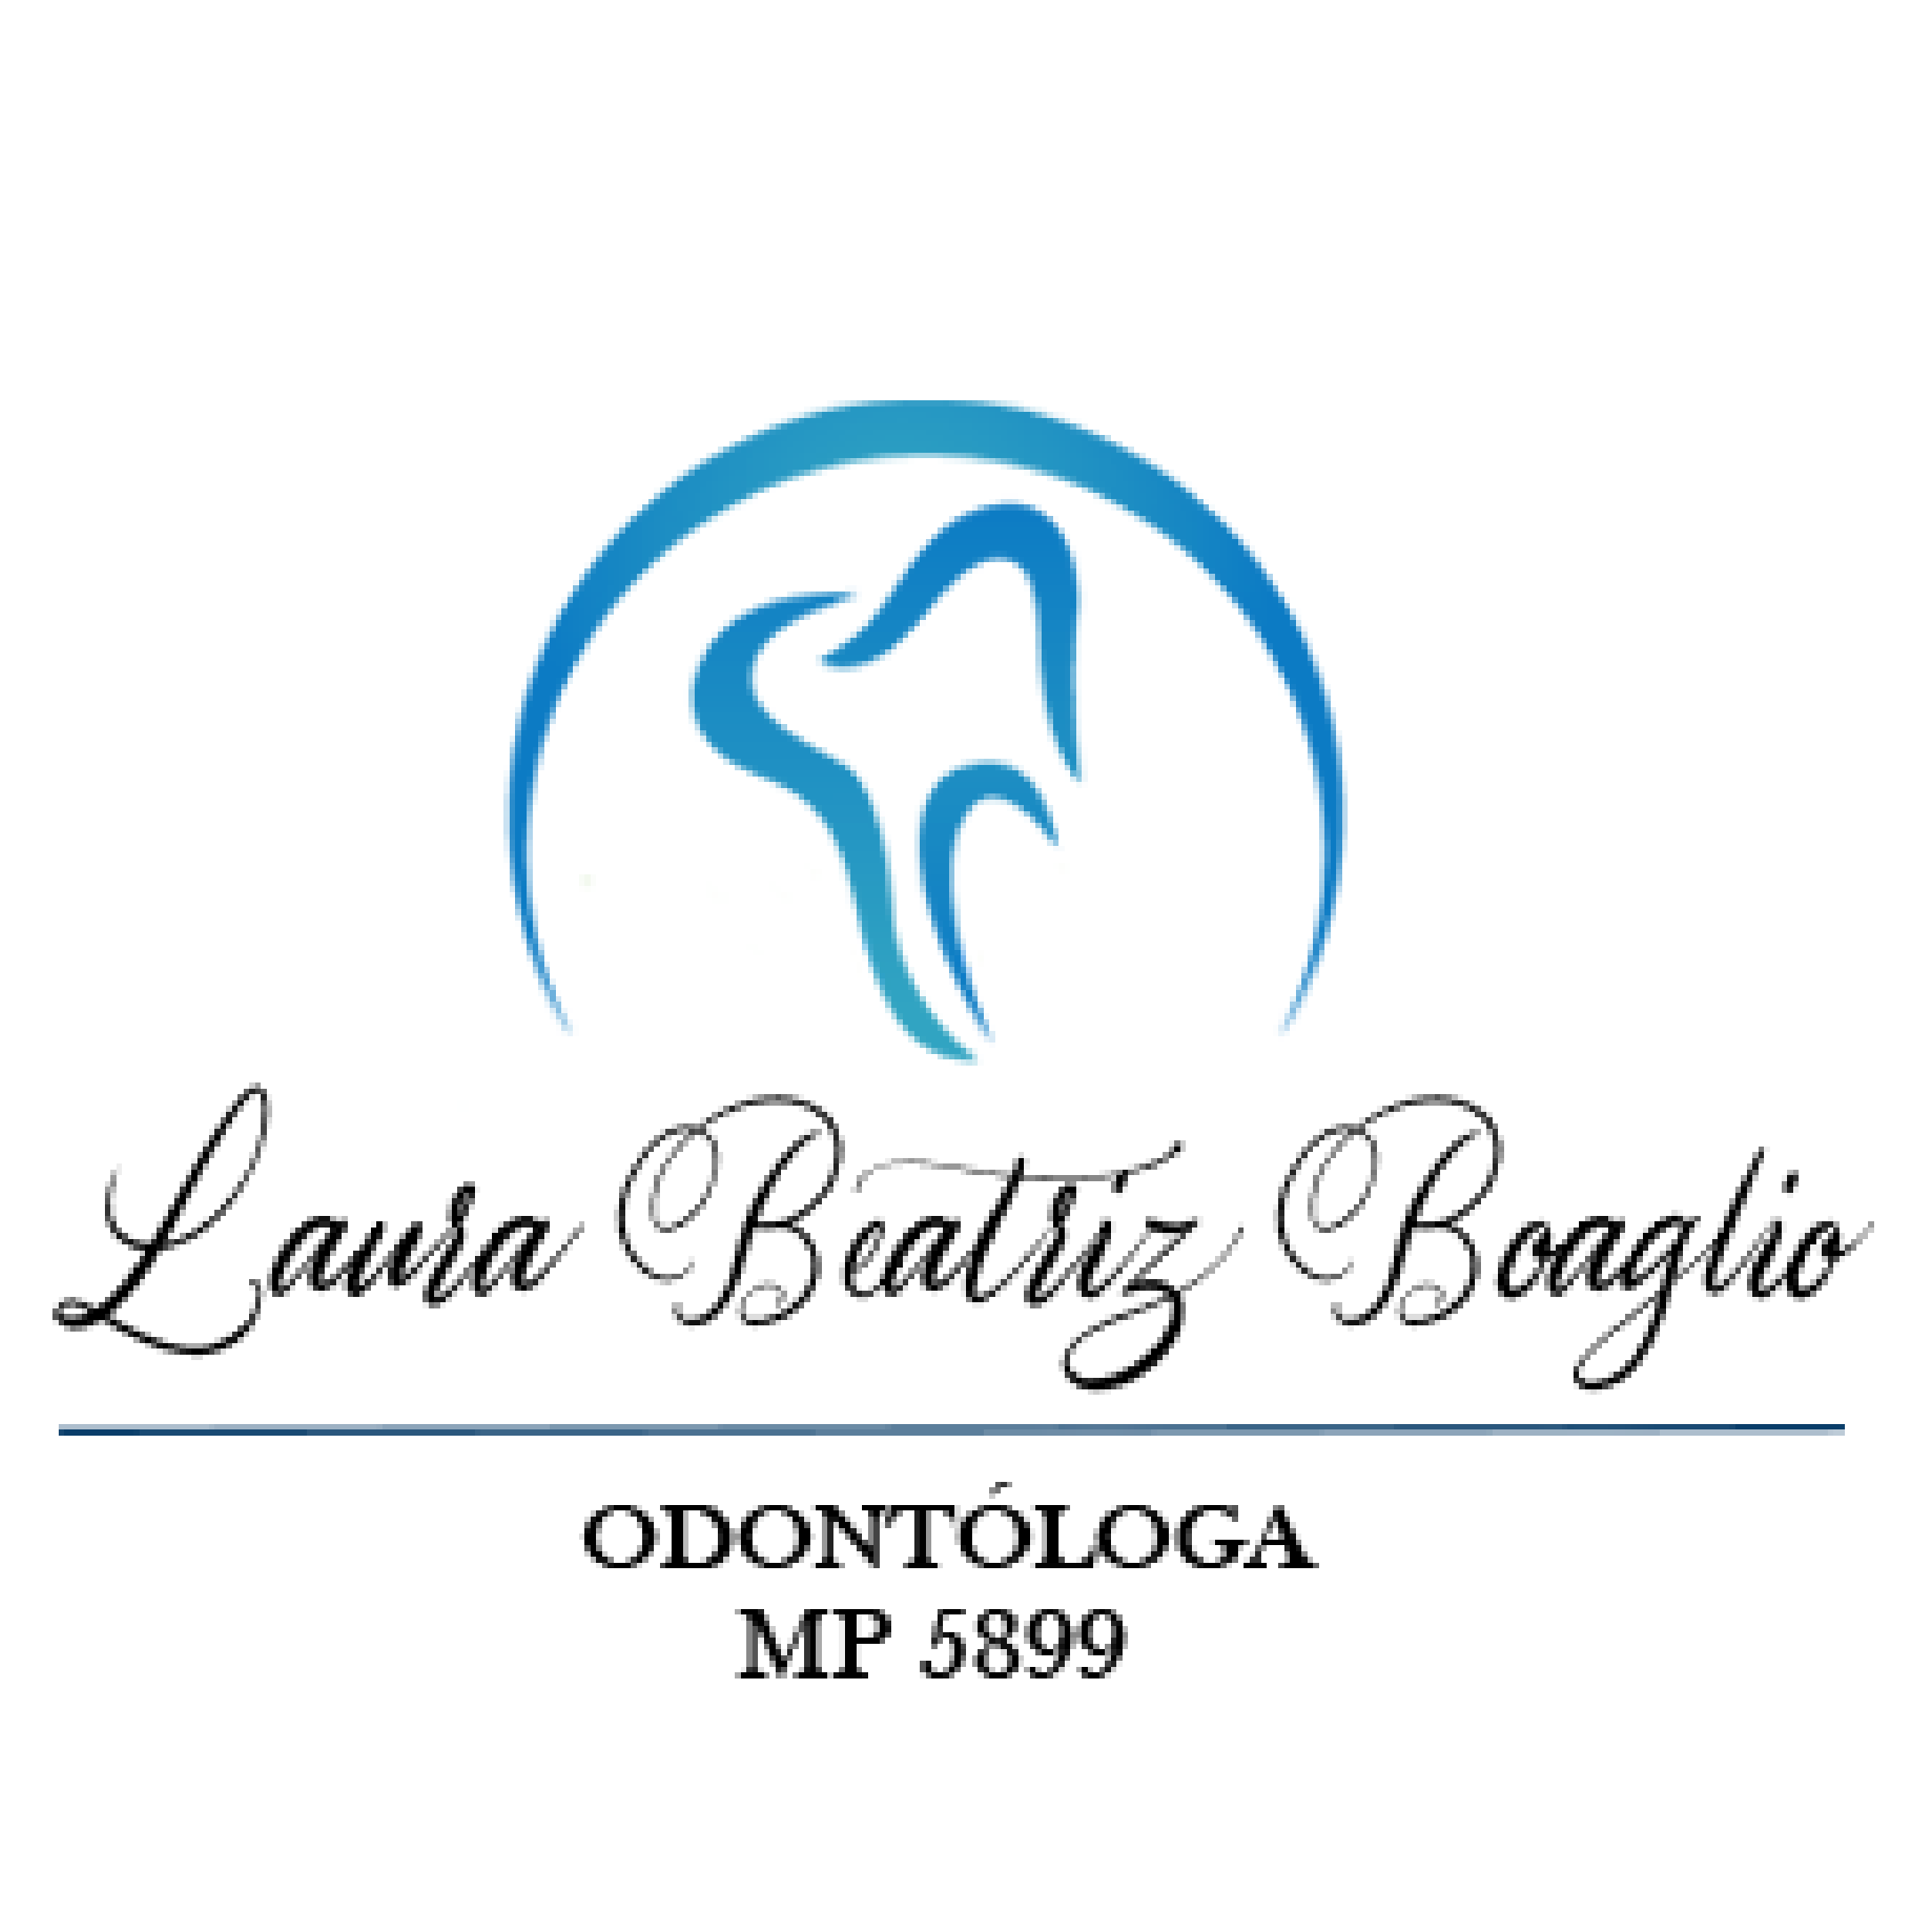 Laura Boaglio odontológica